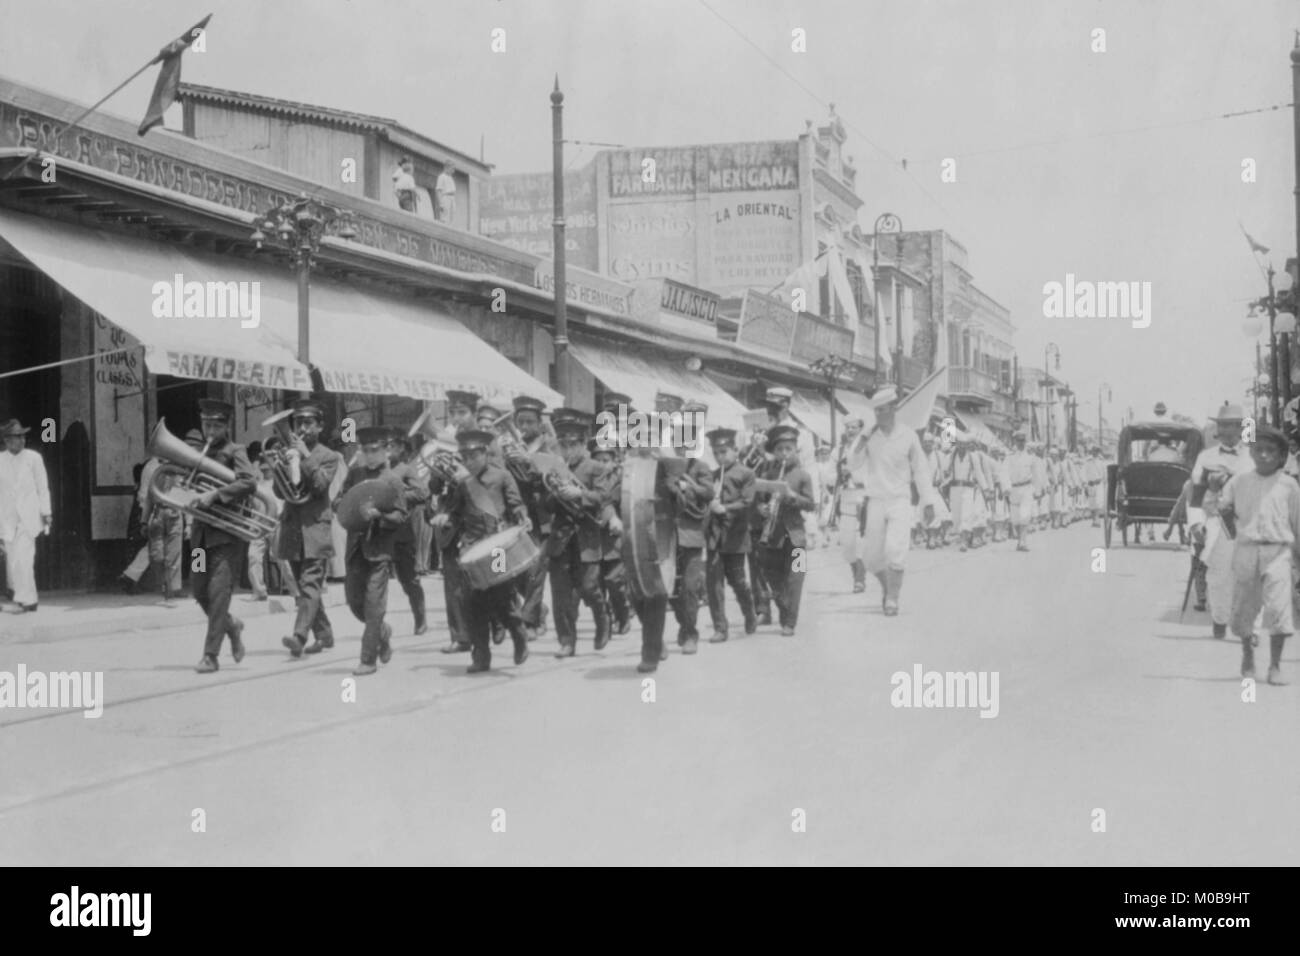 Mexican Band suona strumenti nella parte anteriore del Marching colonne di U.S. I marinai della marina militare Foto Stock